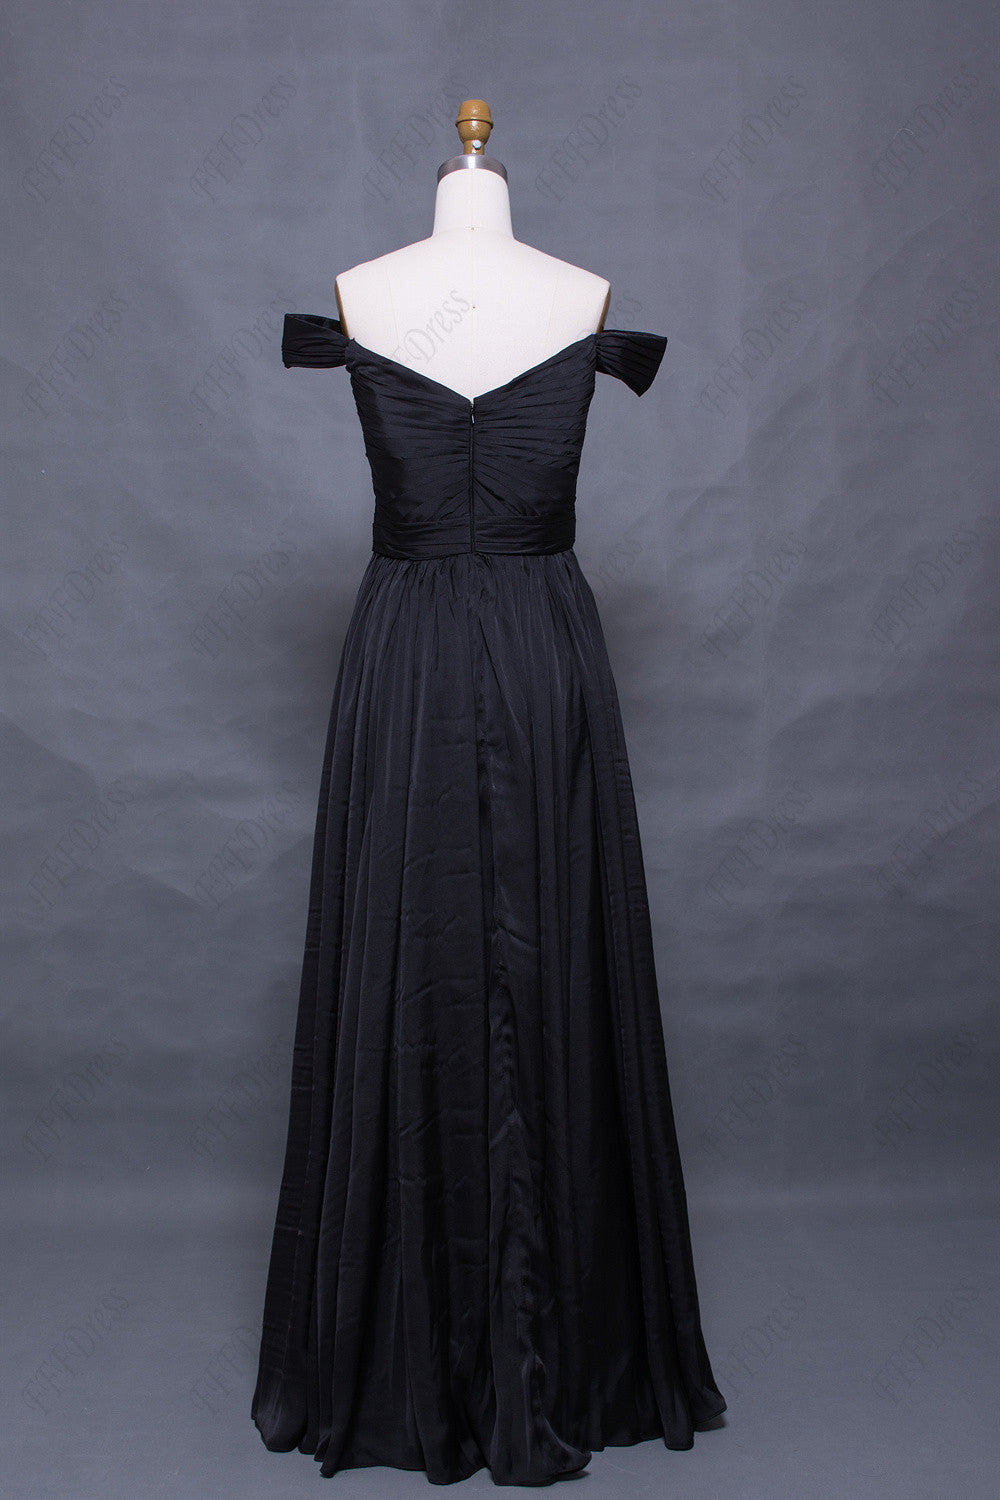 Vintage off the shoulder black prom dresses long